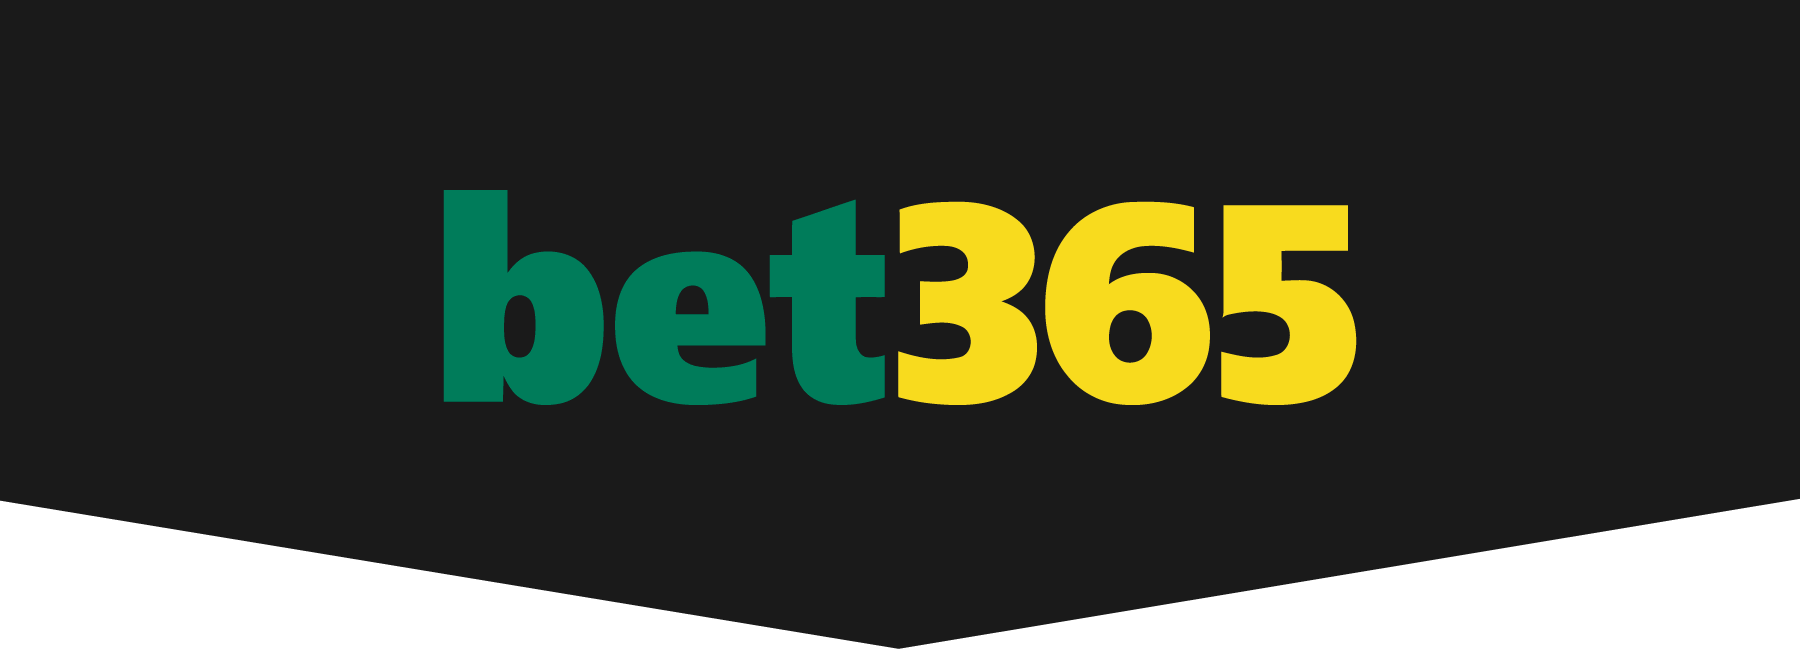 Nieuwe bet365 app voor casino spellen beschikbaar in Nederland